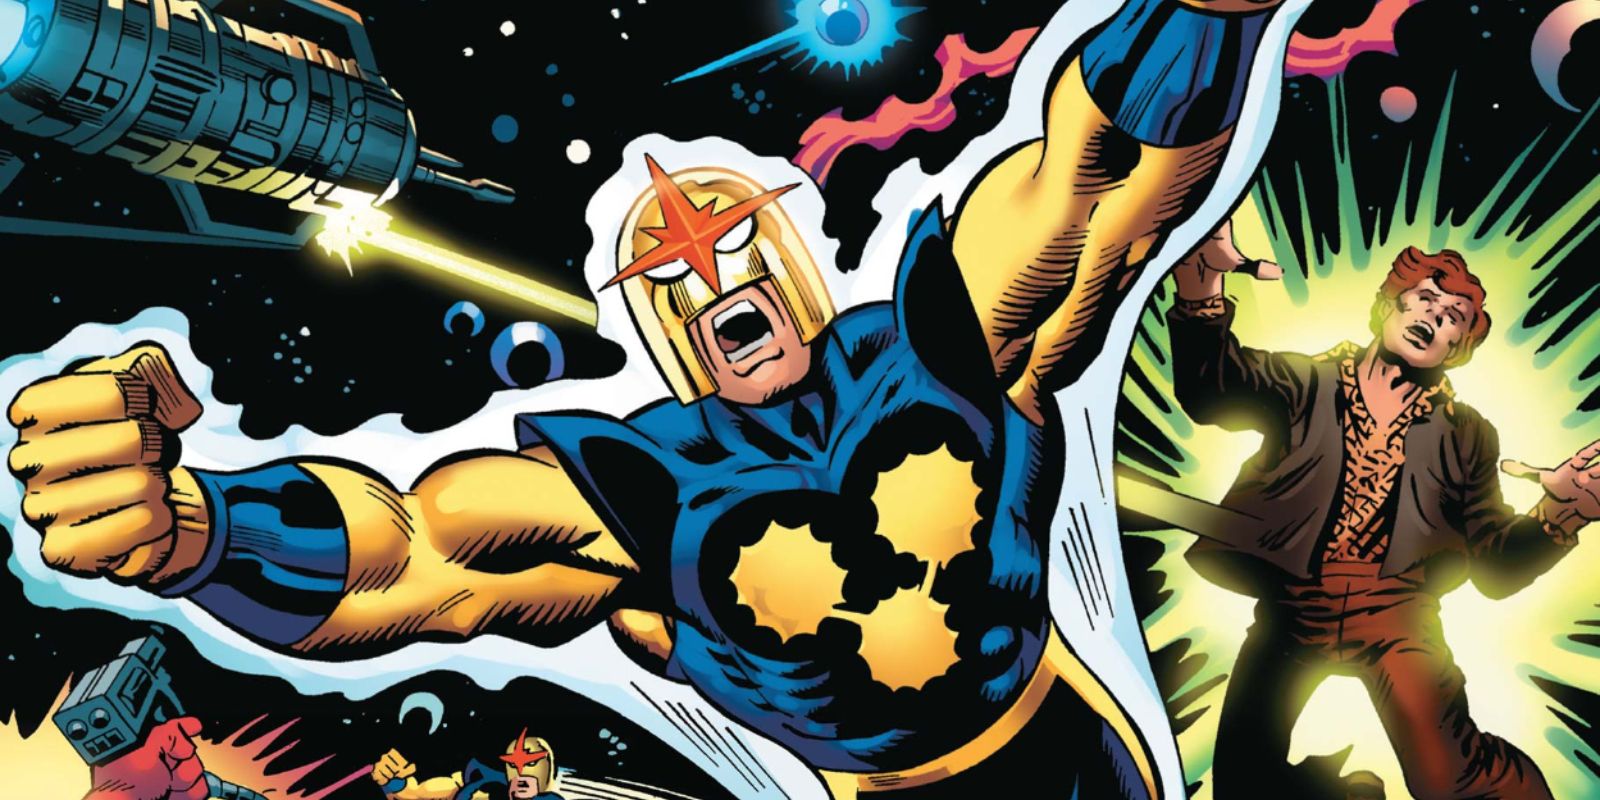 Nova's origins from Marvel Comics